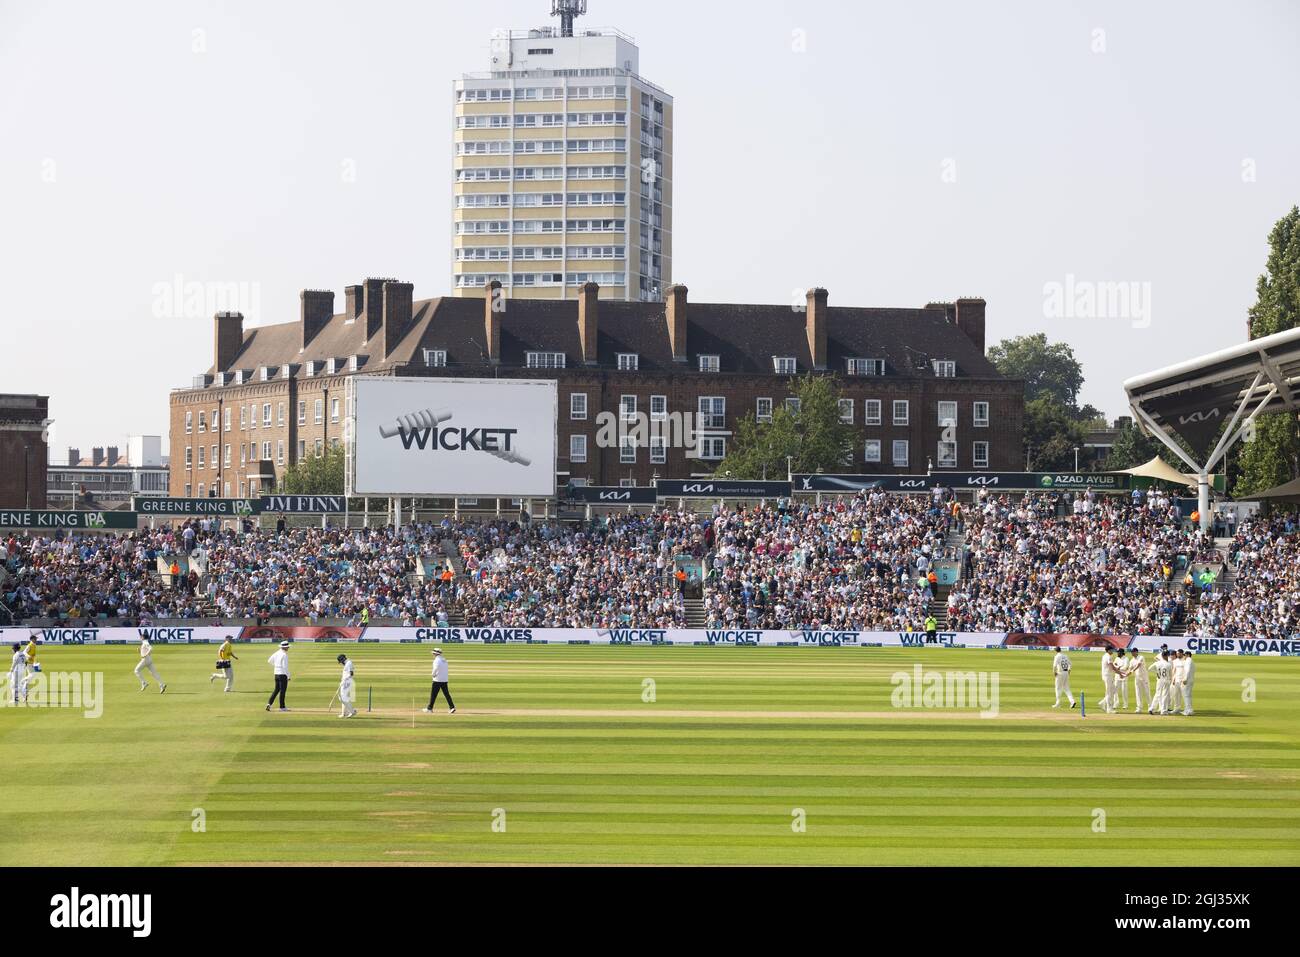 Le cricket de l'Angleterre; le terrain de cricket ovale, ou Kia Oval, 2021 juillet, match d'essai Angleterre/Inde, regardé par des foules de fans en été, The Oval, Londres UK Banque D'Images